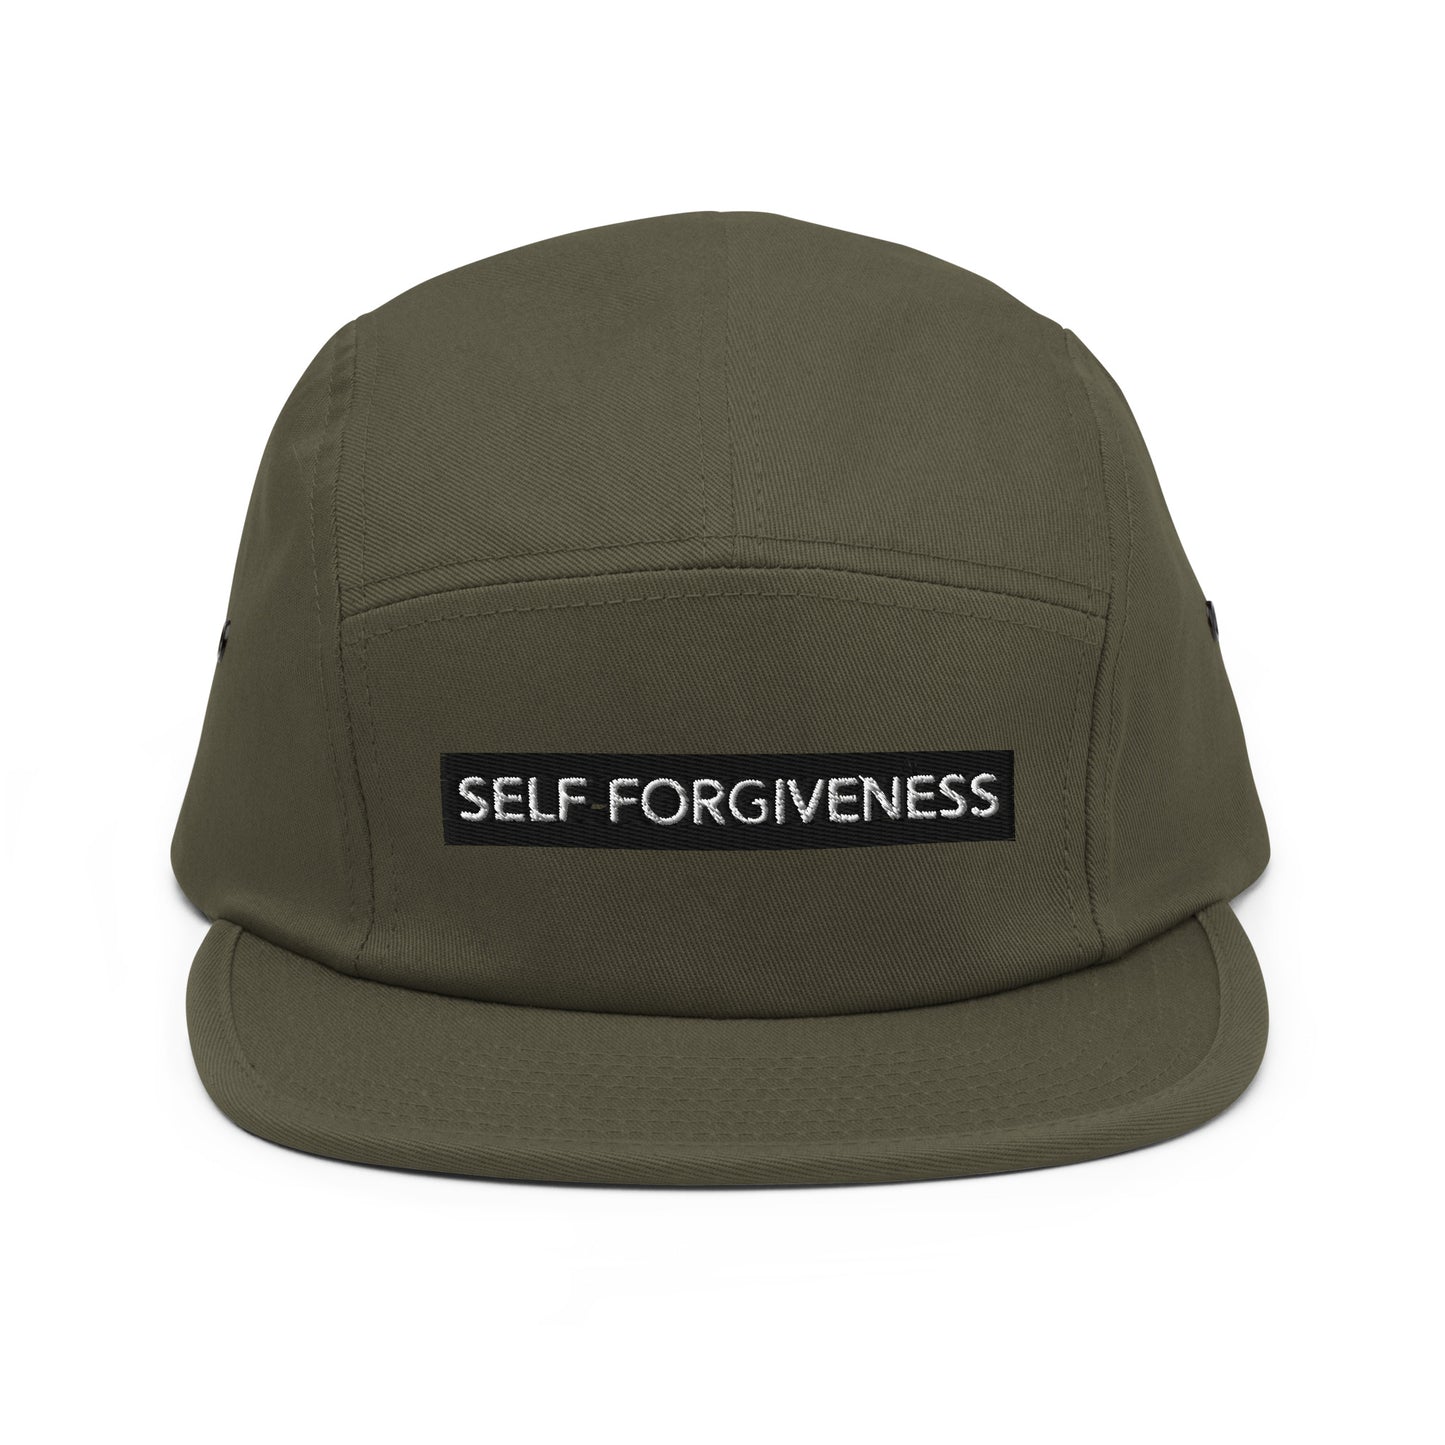 Self Forgiveness - Five Panel Cap